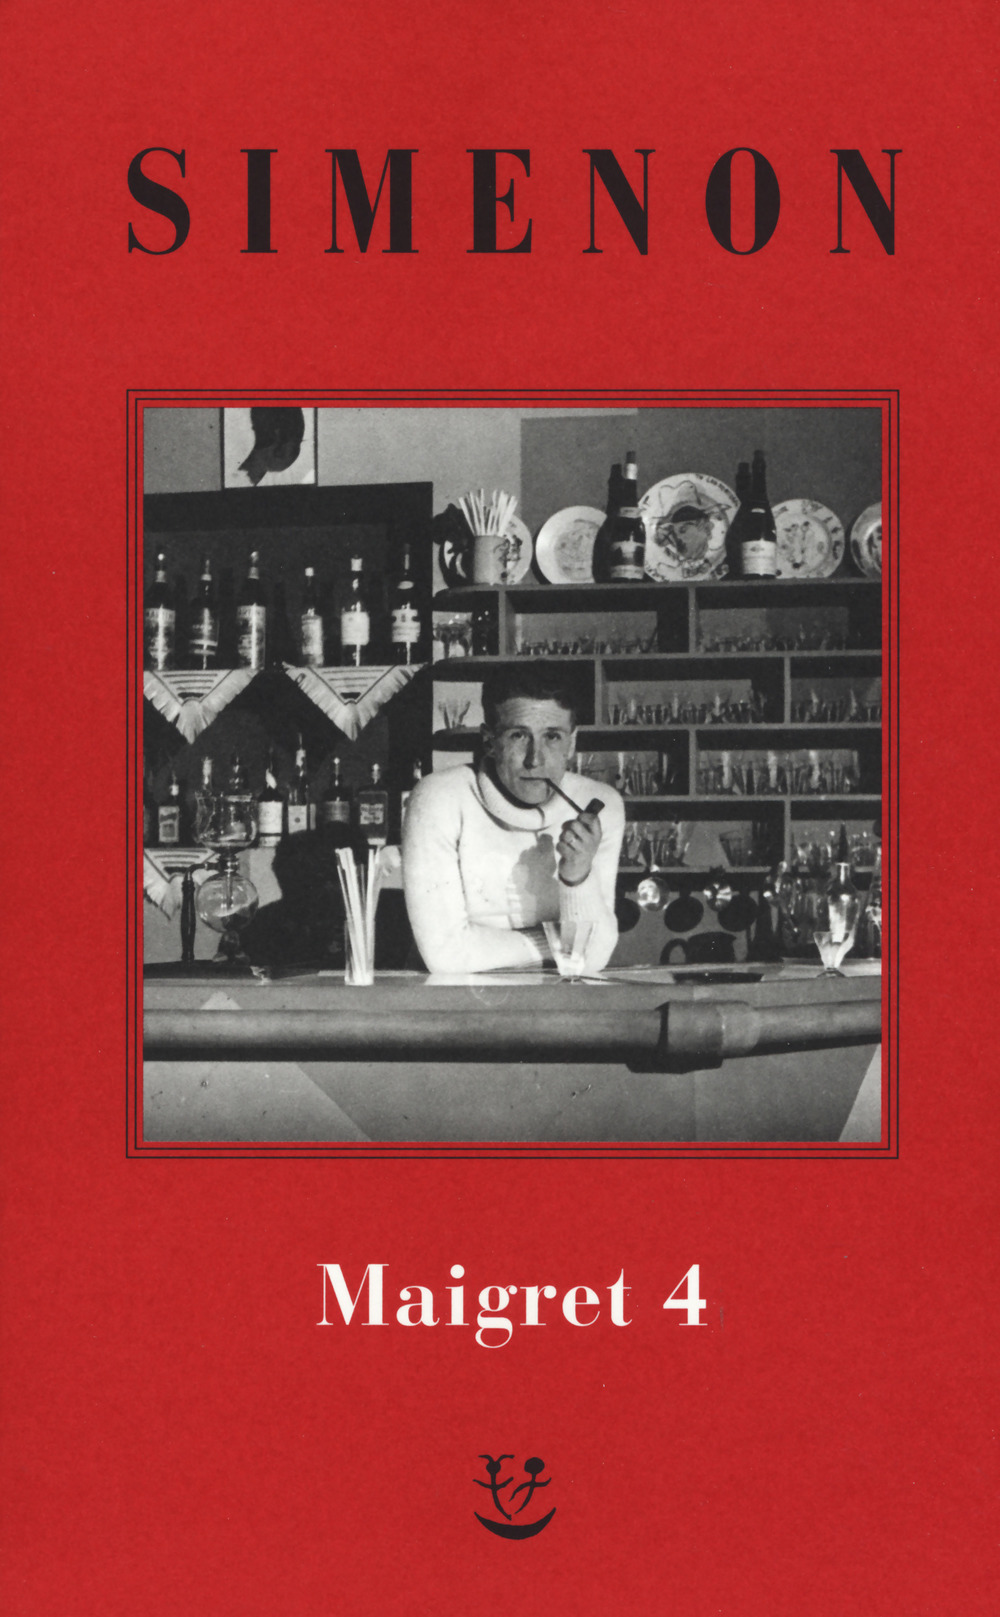 Libri Georges Simenon - I Maigret: Il Pazzo Di Bergerac-Liberty Bar-La Chiusa N.1-Maigret-I Sotteranei Del Majestic. Nuova Ediz. Vol 04 NUOVO SIGILLATO, EDIZIONE DEL 21/08/2019 SUBITO DISPONIBILE